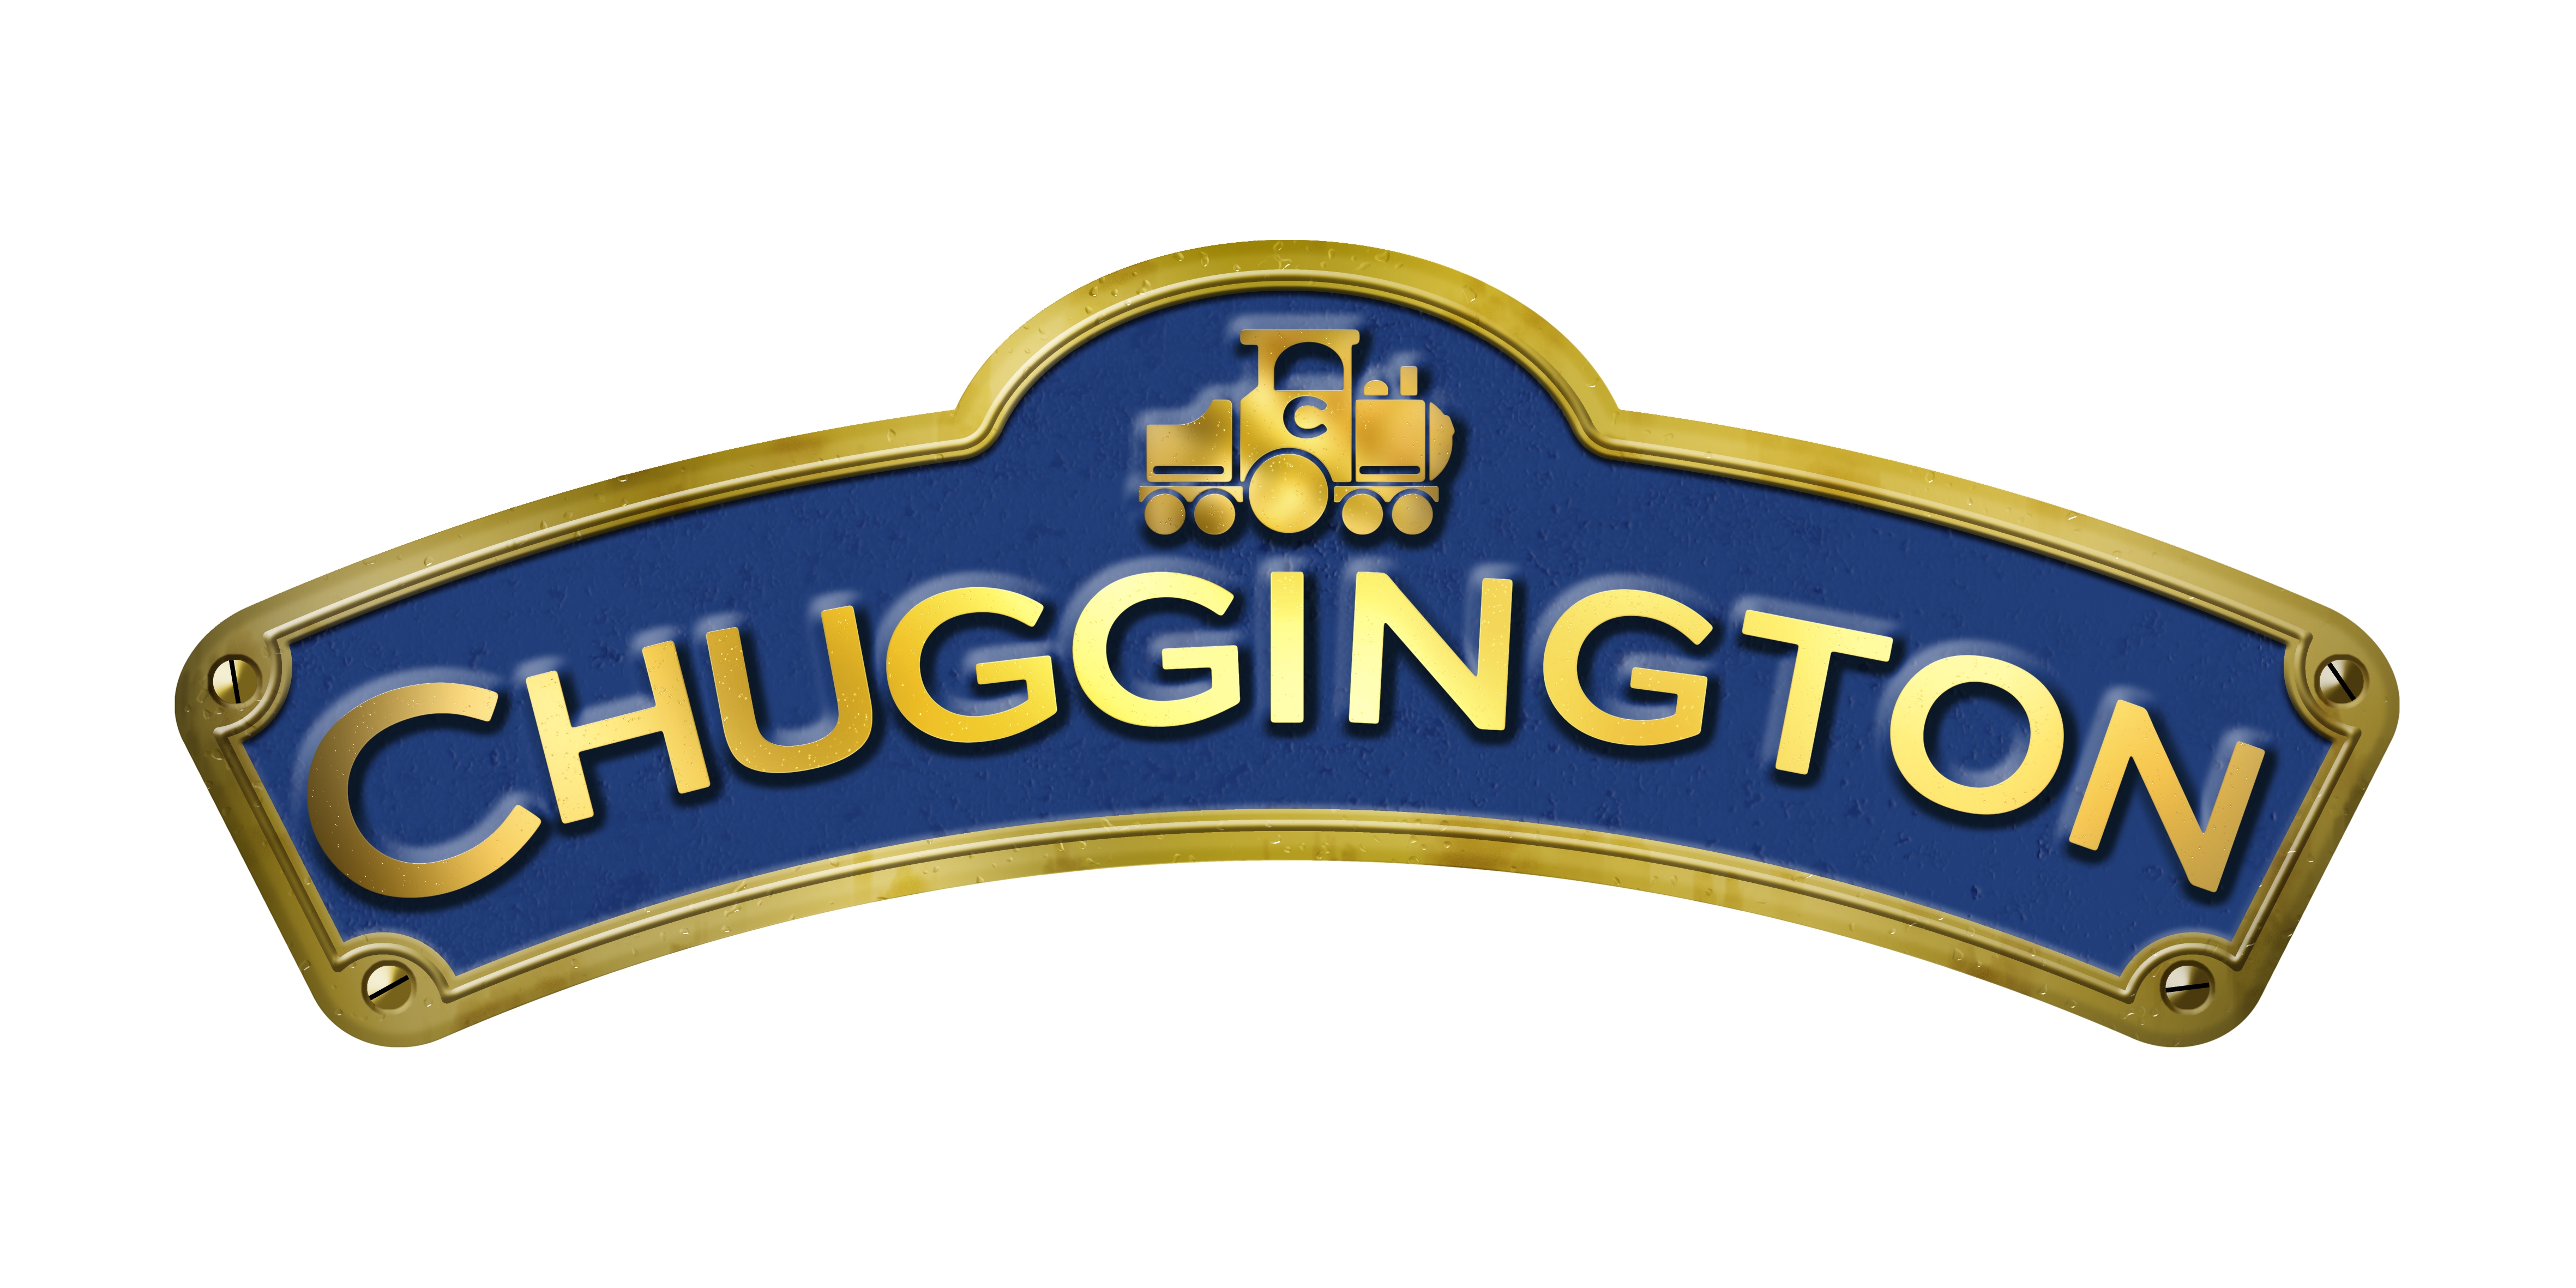 Chuggington – Die Loks sind los! – Wikipedia